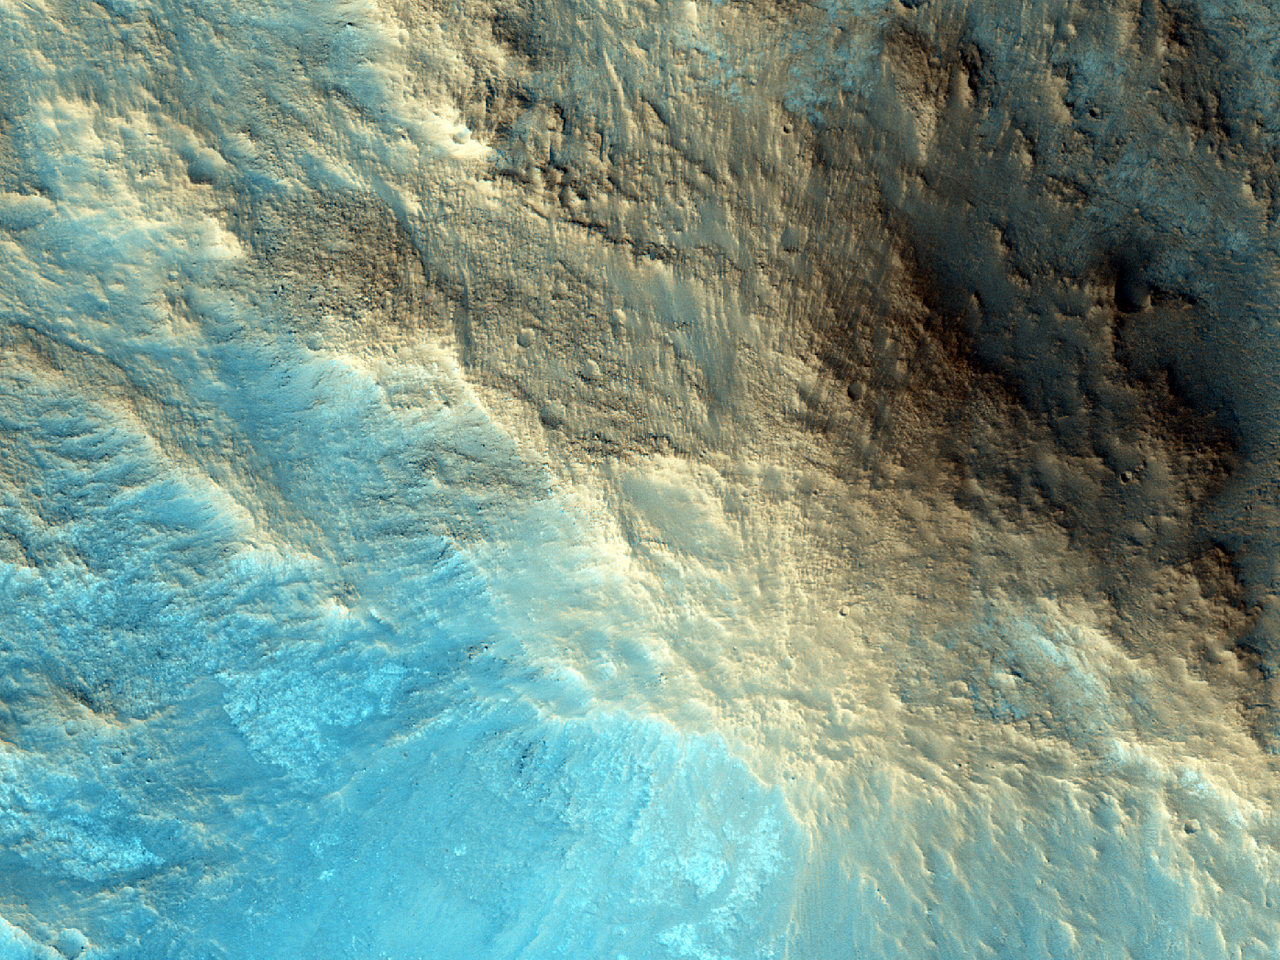 Centrale structuren van de Zuni krater